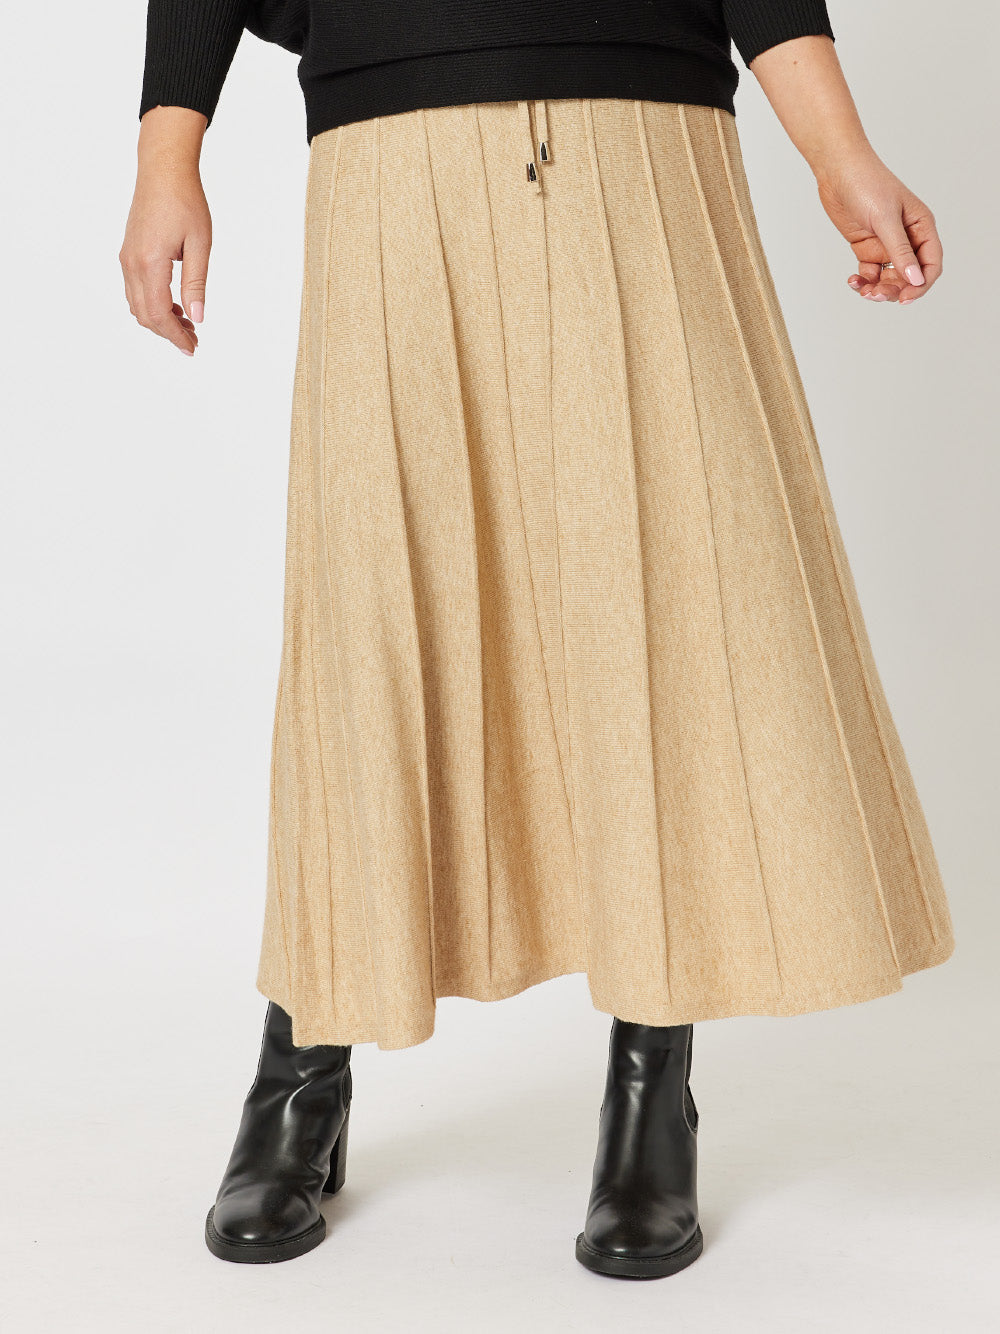 Kate Long Knit Skirt - Caramel